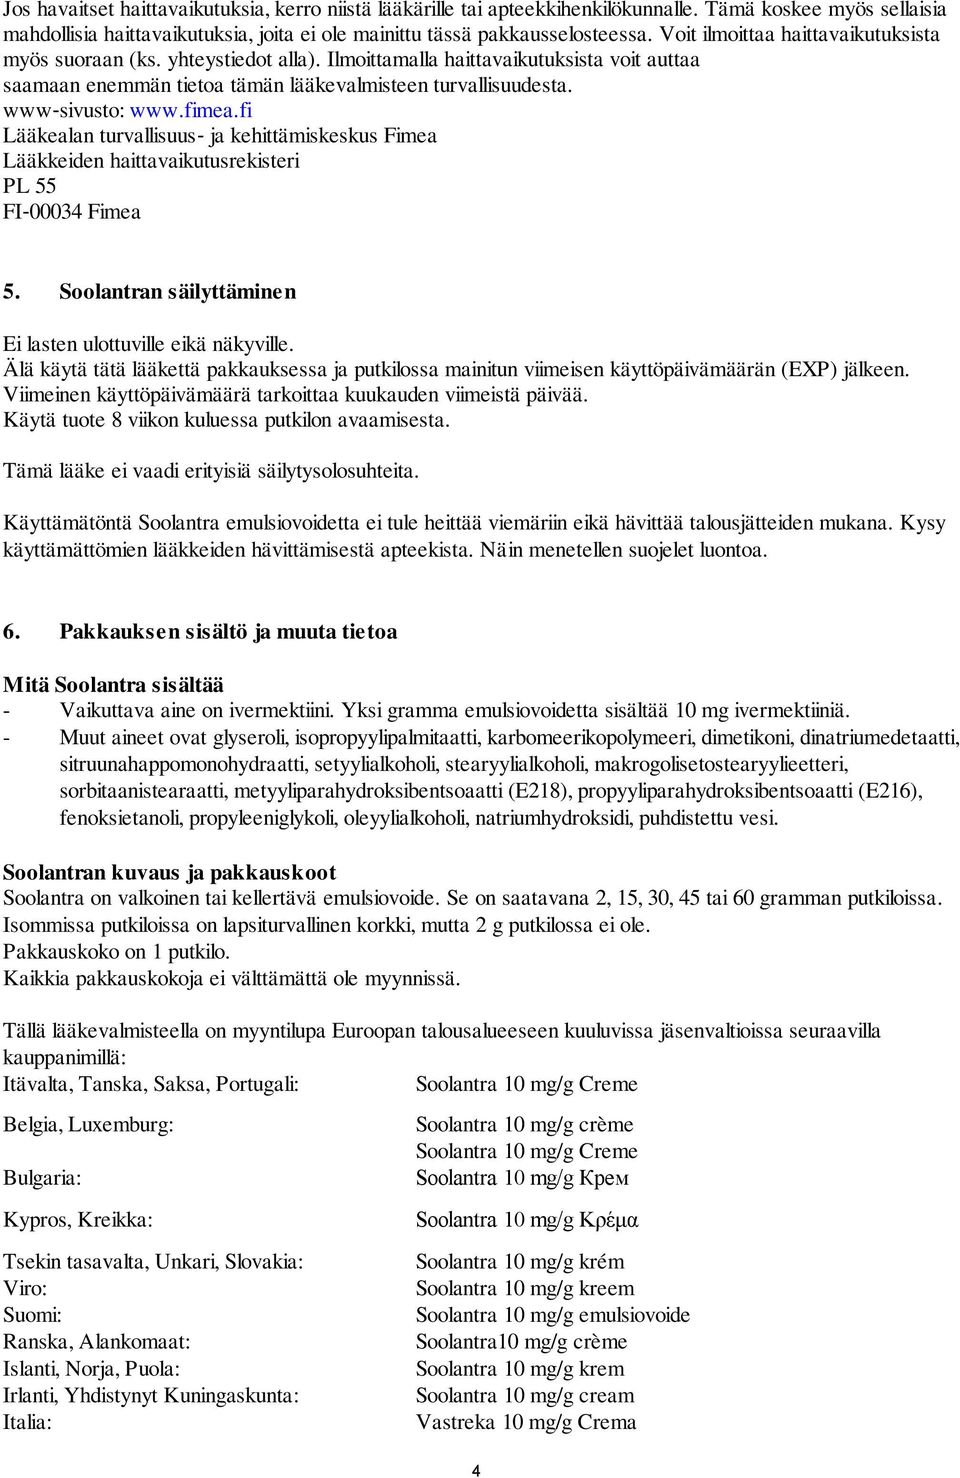 fimea.fi Lääkealan turvallisuus ja kehittämiskeskus Fimea Lääkkeiden haittavaikutusrekisteri PL 55 FI 00034 Fimea 5. Soolantran säilyttäminen Ei lasten ulottuville eikä näkyville.